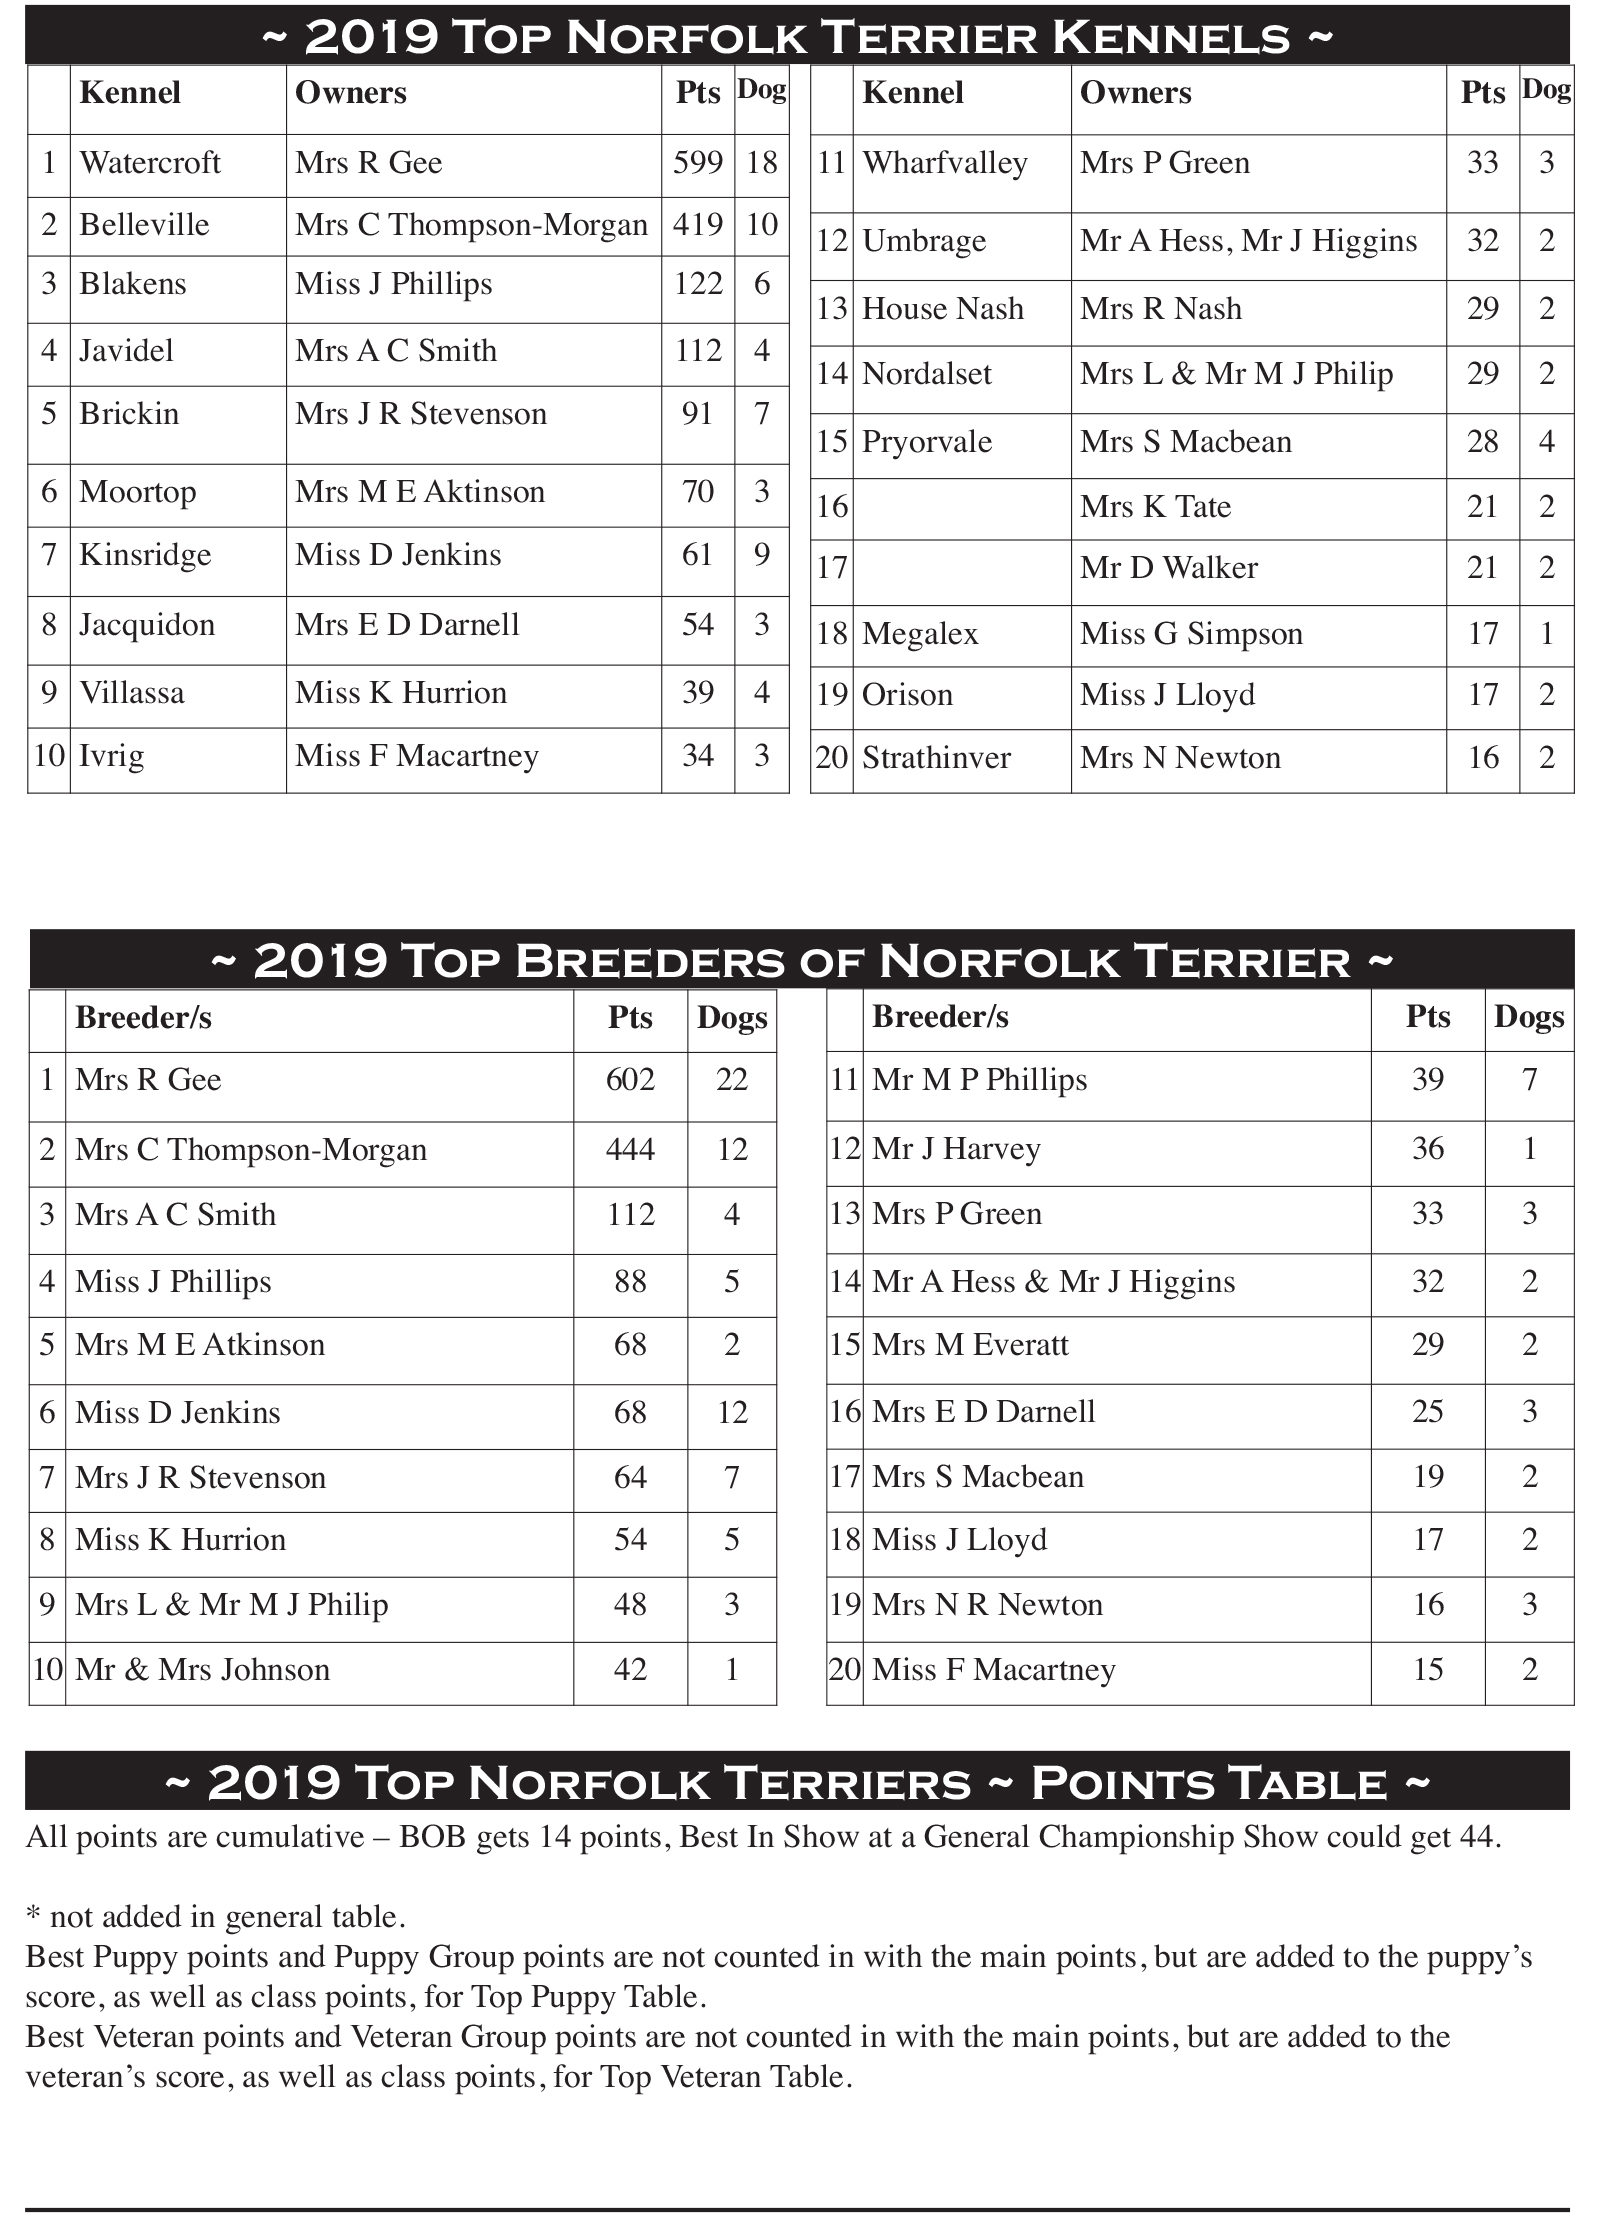 Top Norfolk Terrier Table 2019